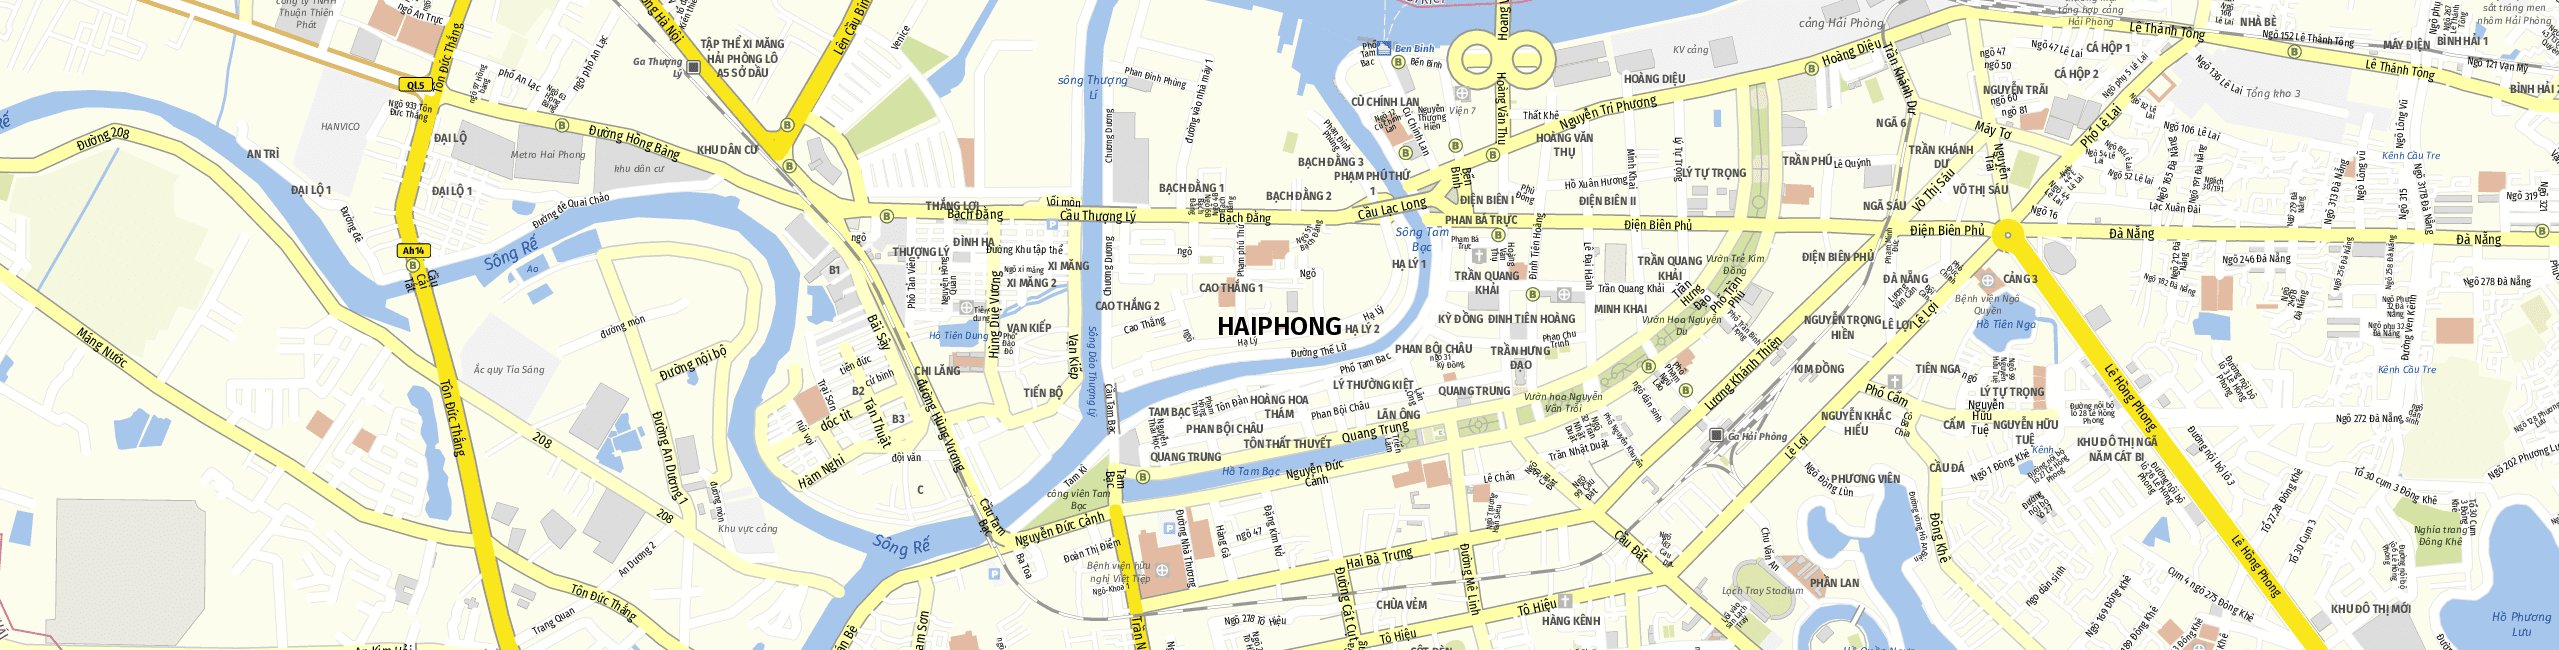 Stadtplan Haiphong zum Downloaden.